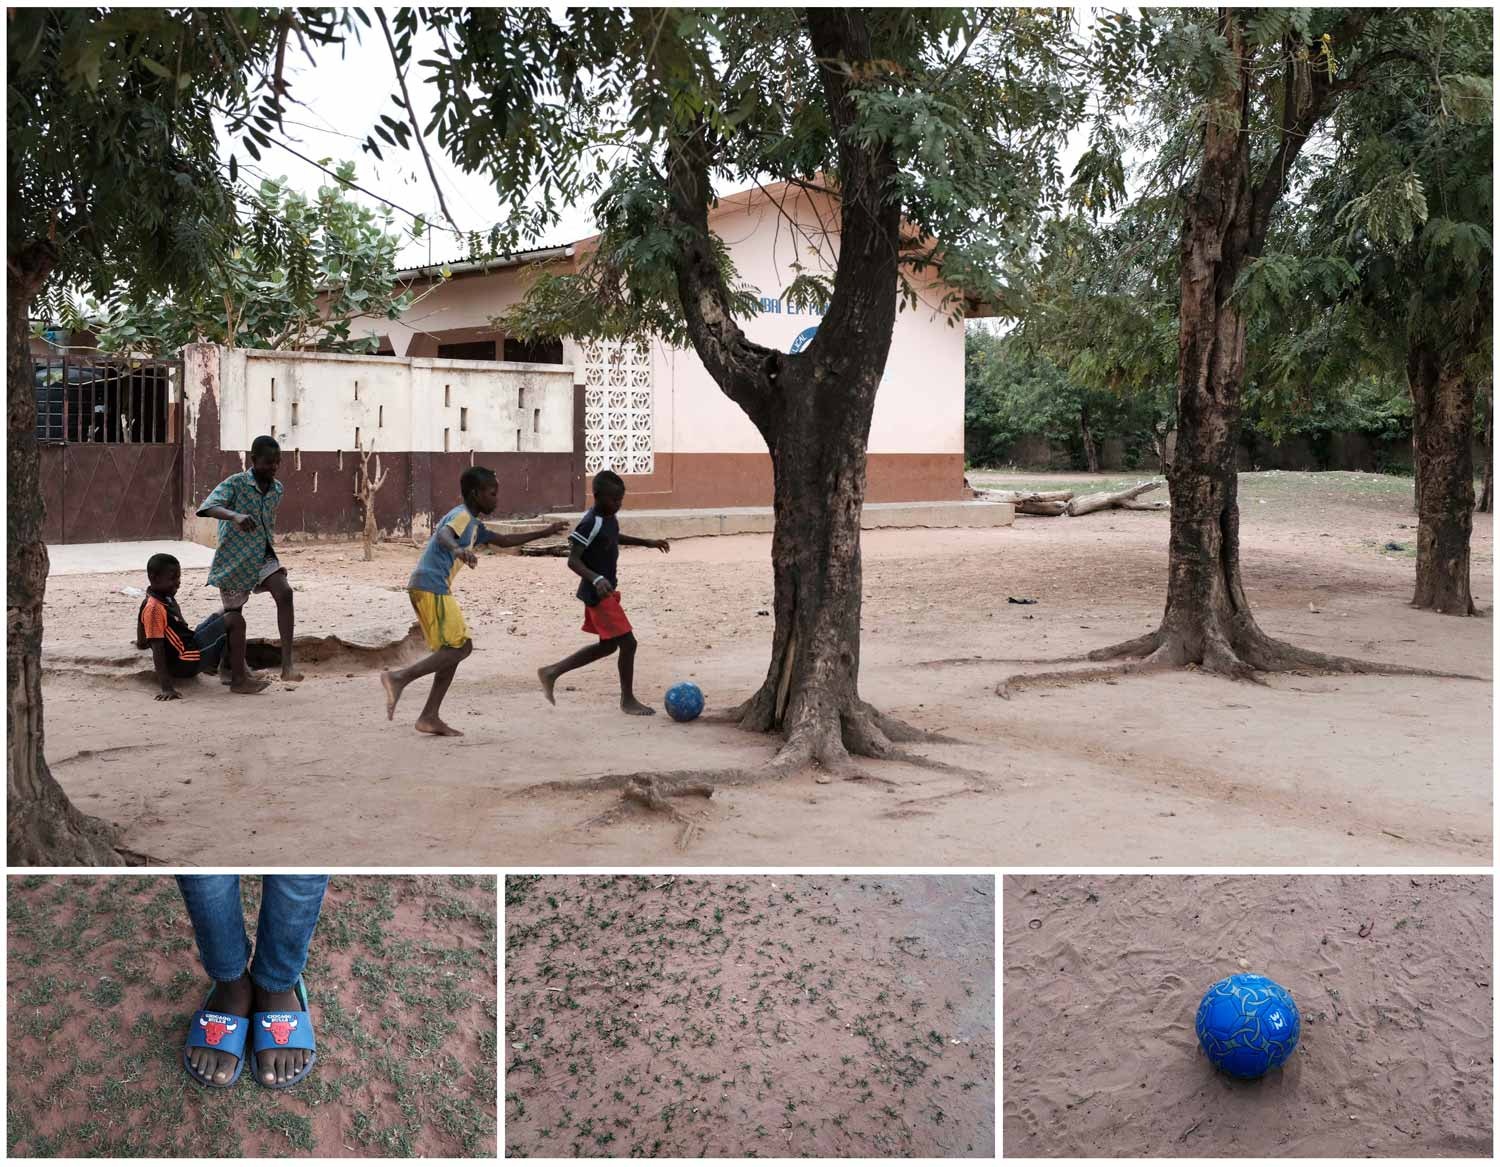  Descal&ccedil;as, sobre a terra e sem balizas. este grupo de crian&ccedil;as parece precisar apenas de uma bola para se divertir. Jogam uma partida de futebol durante o intervalo das aulas na cidade de Dambai, no Gana. Foto: Francis Kokoroko - Reuters  